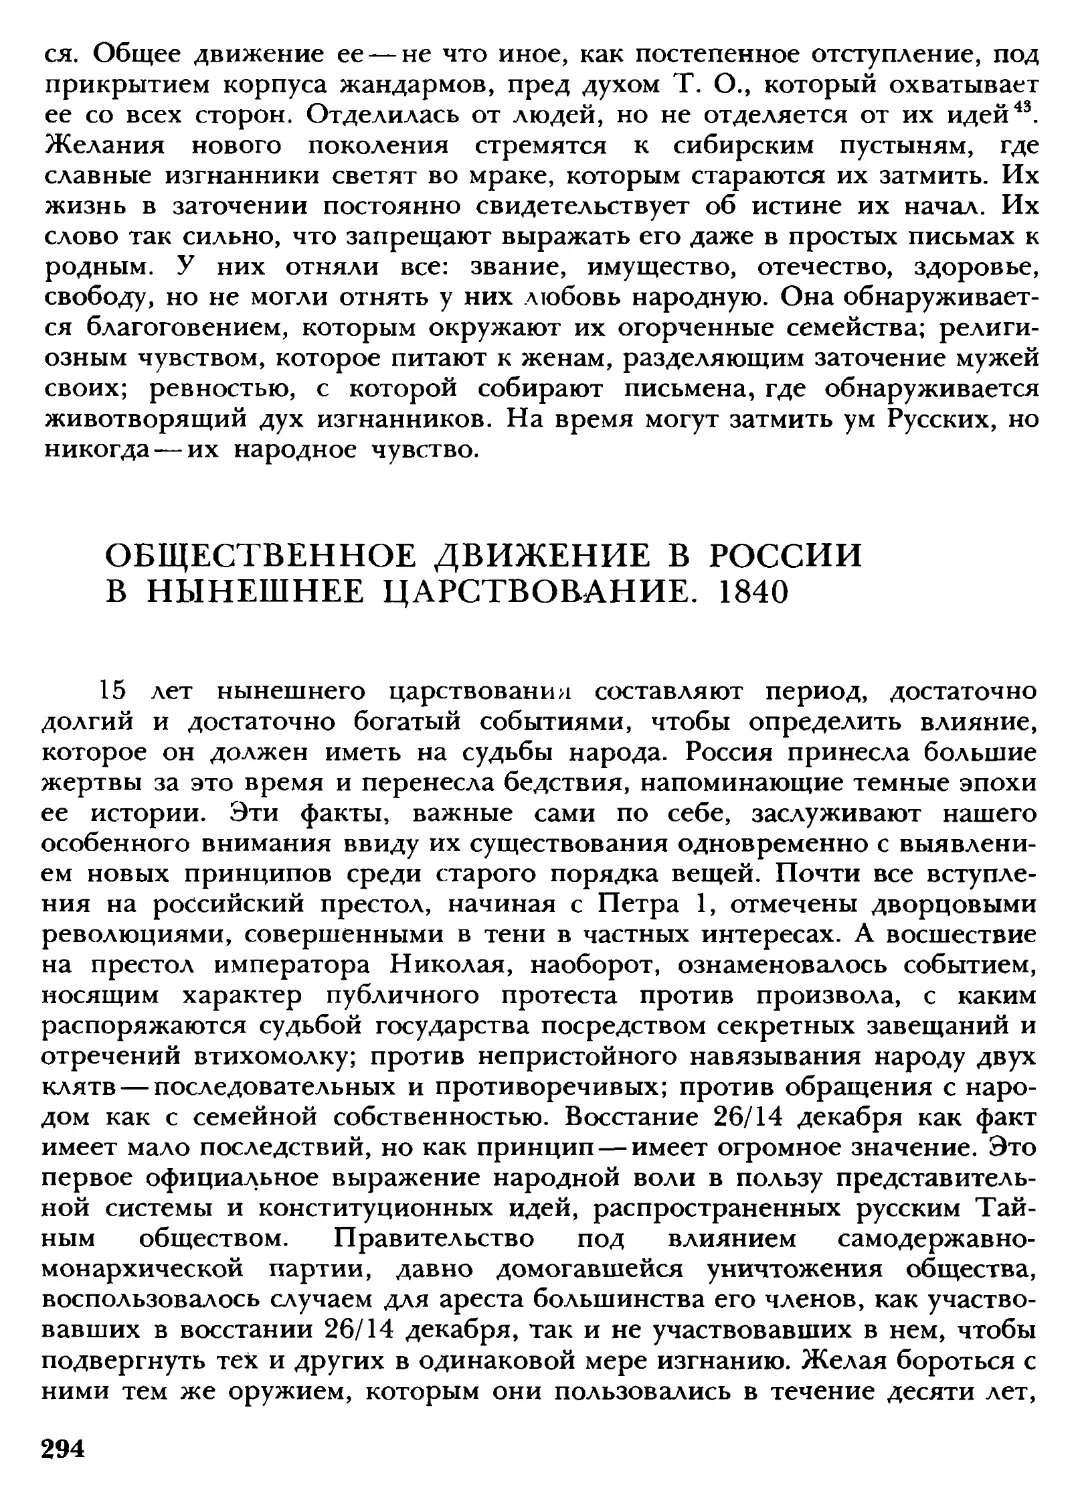 Общественное движение в России в нынешнее царствование. 1840